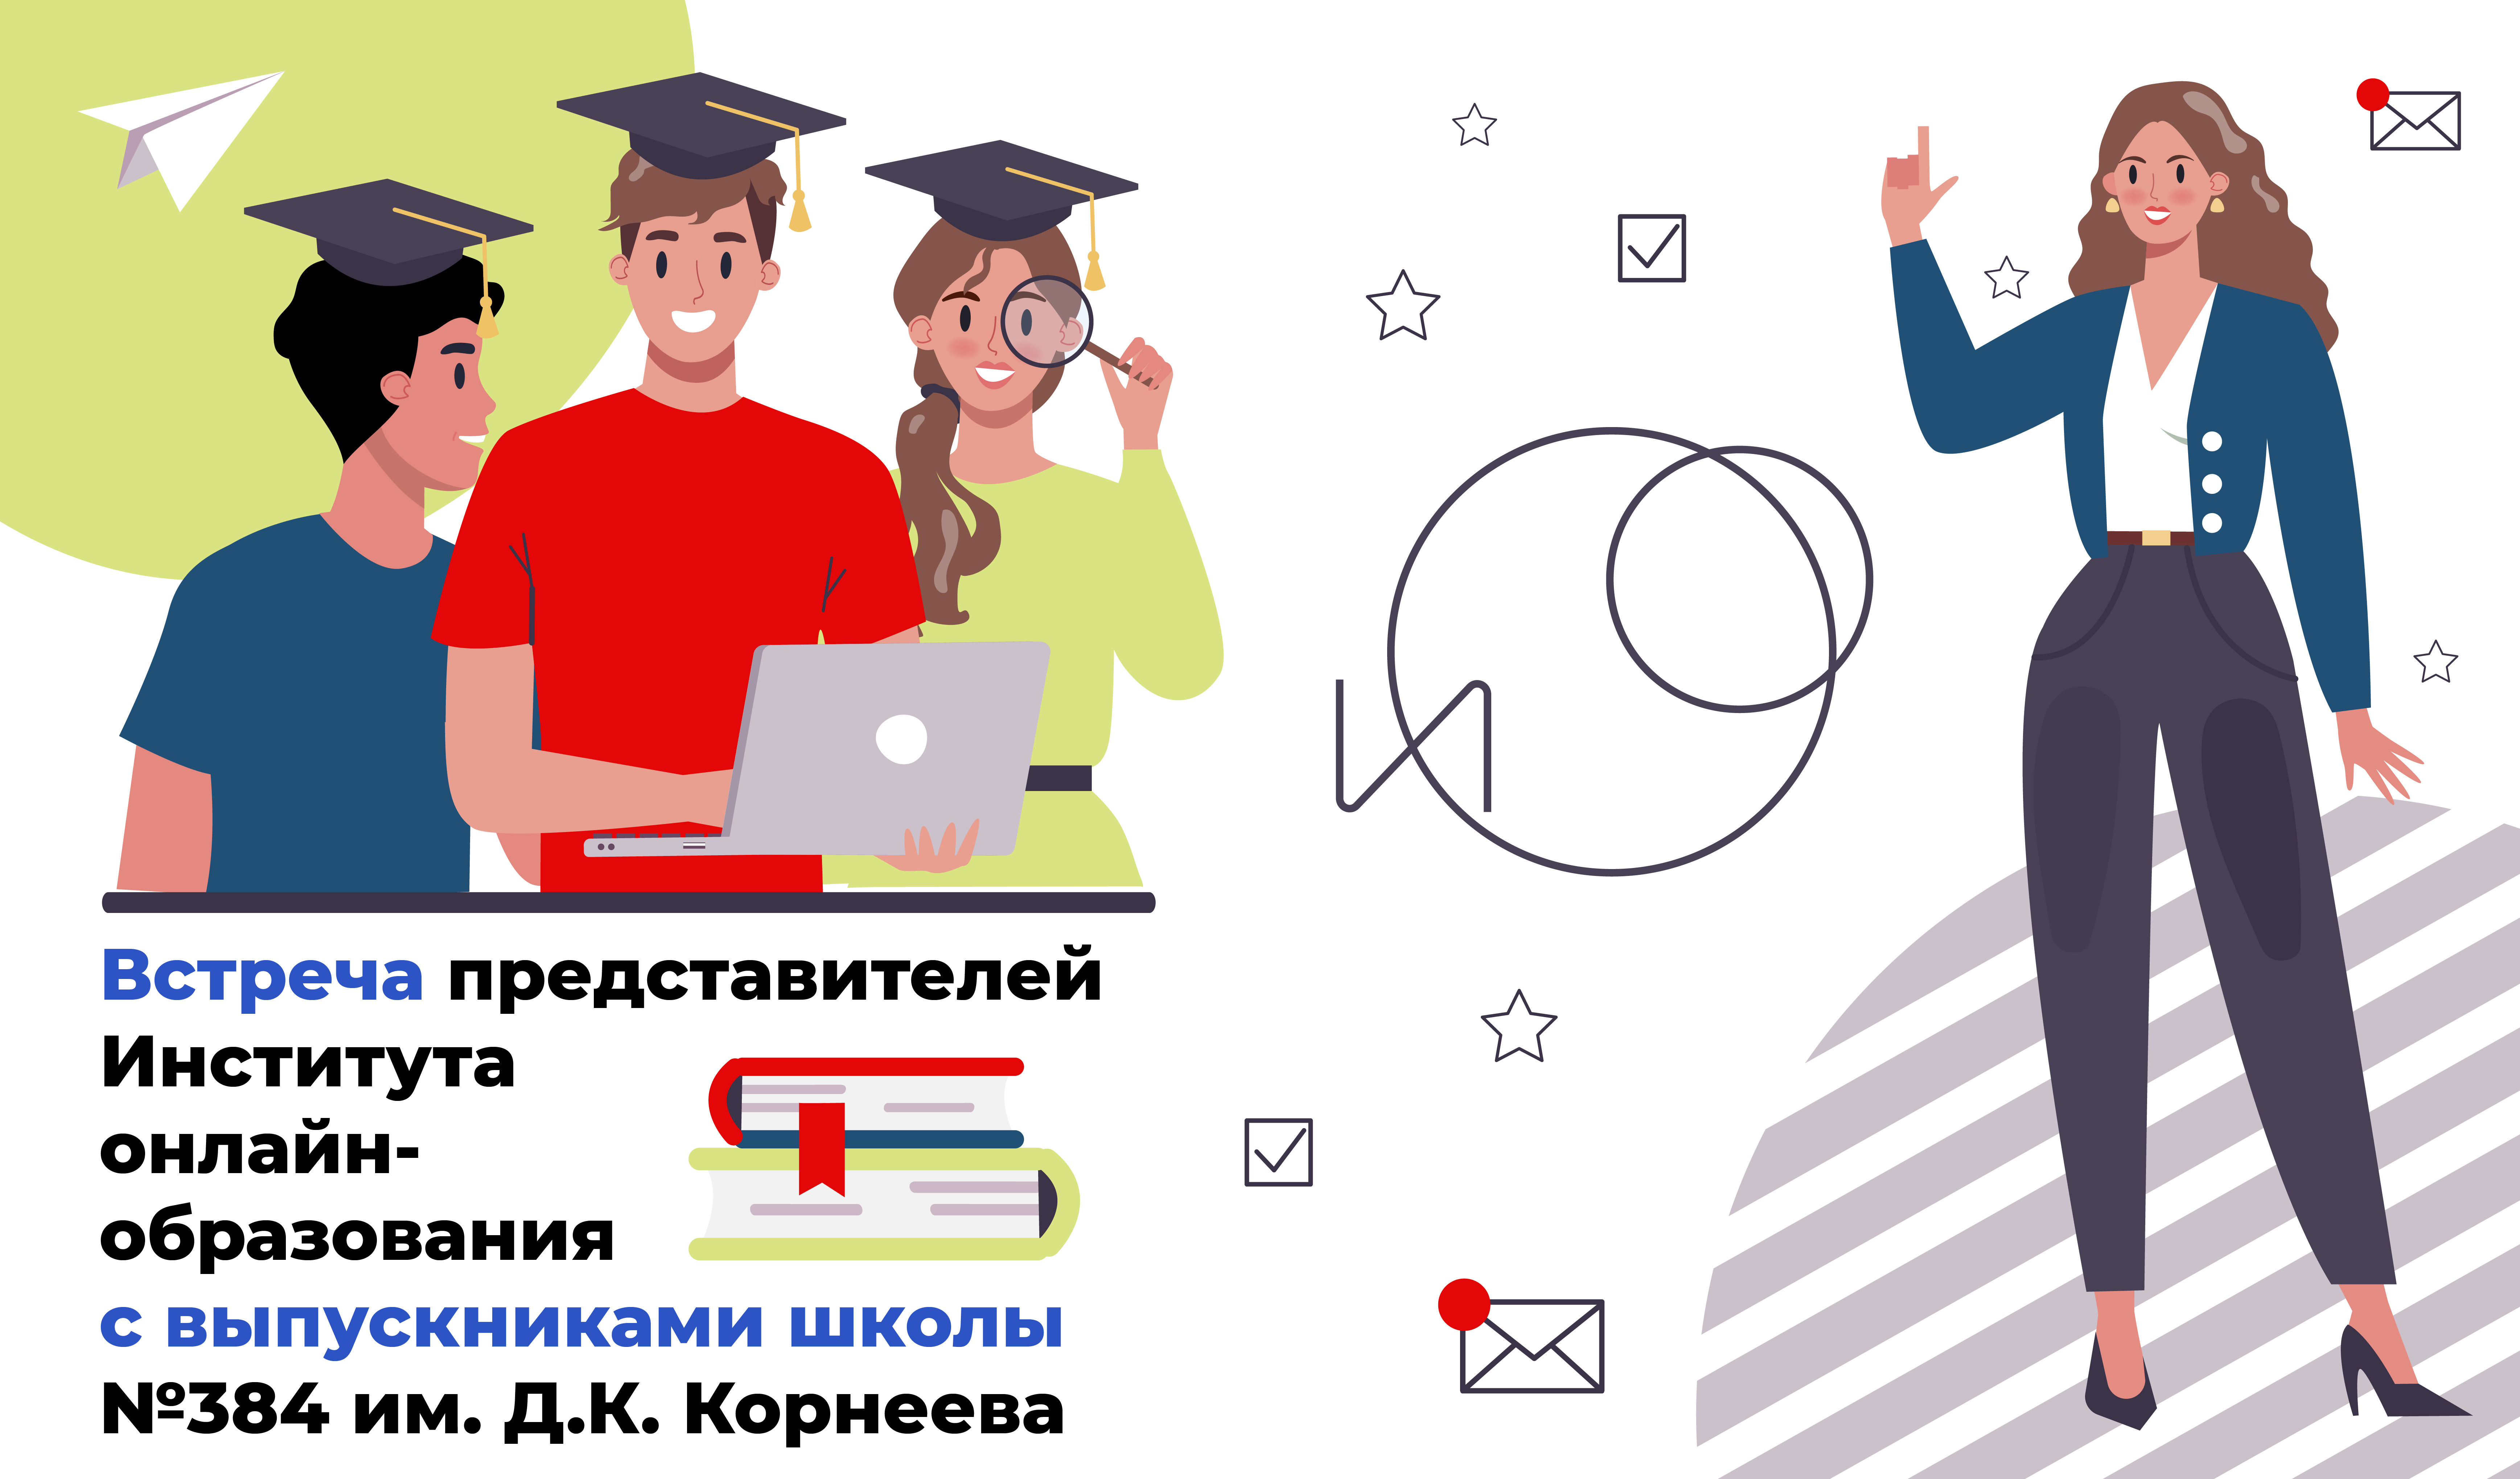 Встреча представителей Института онлайн-образования с выпускниками школы №384 им. Д.К. Корнеева 